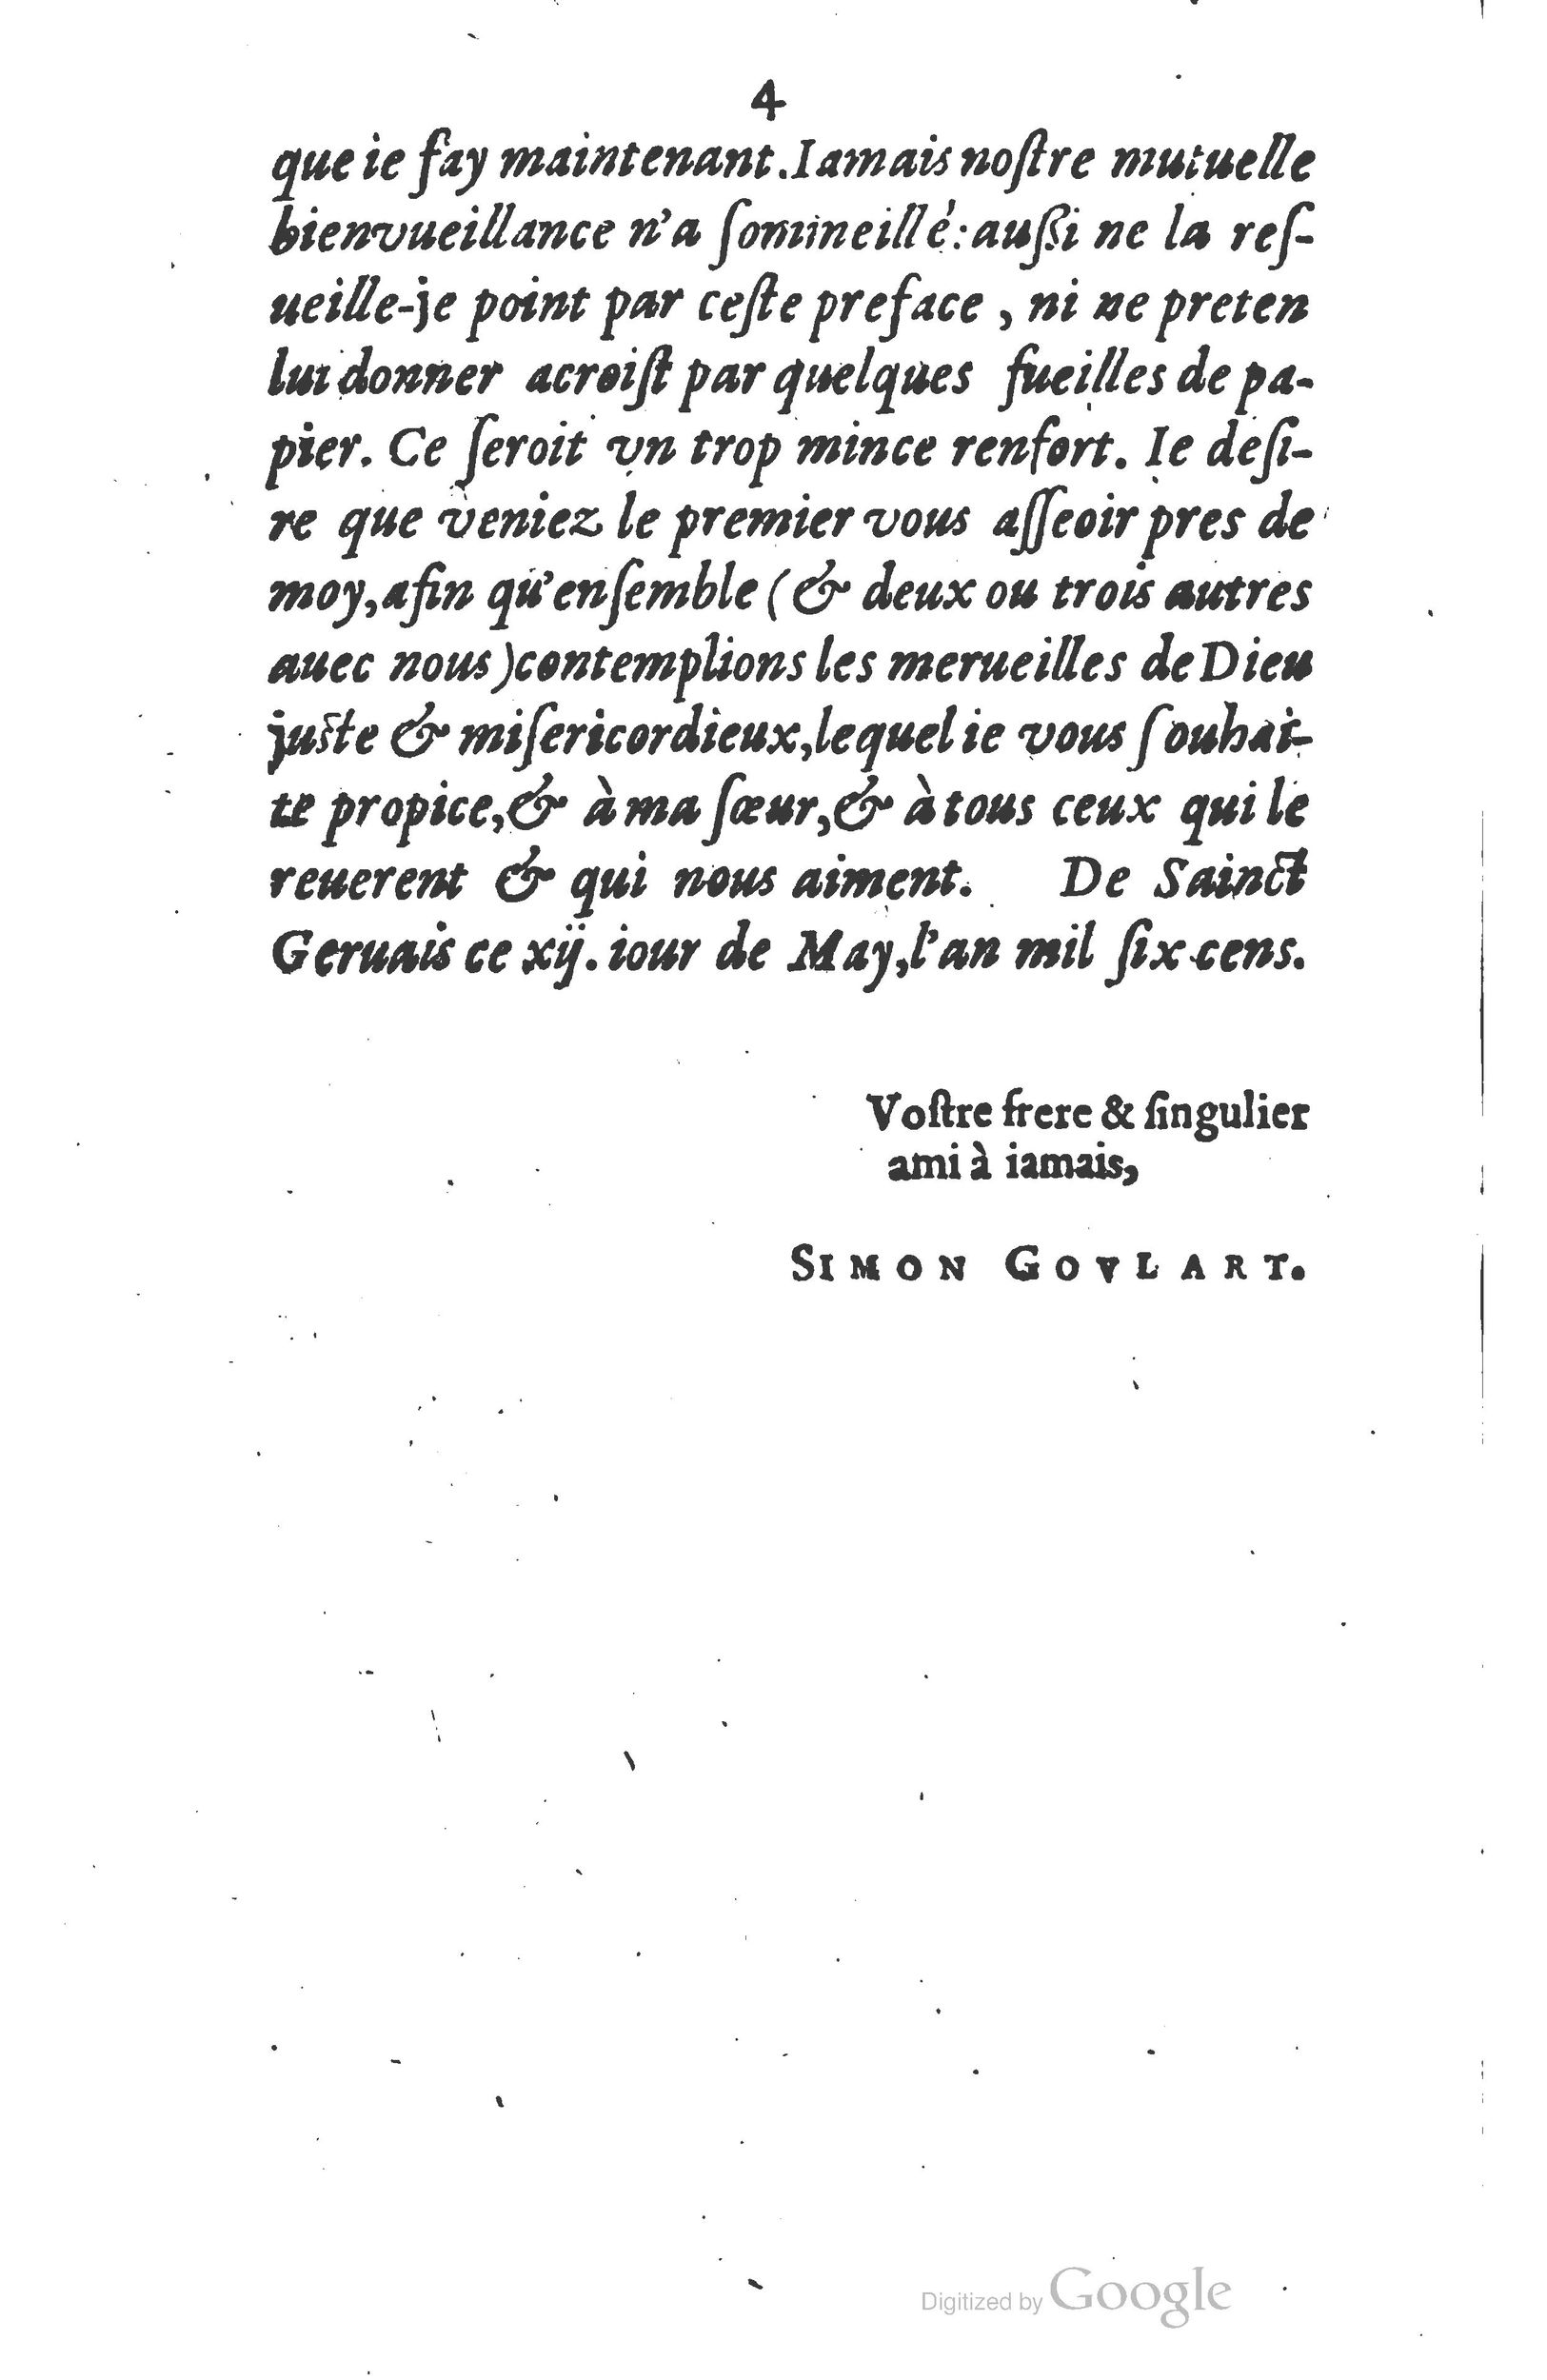 1610 Trésor d’histoires admirables et mémorables de nostre temps Marceau Princeton_Page_0009.jpg